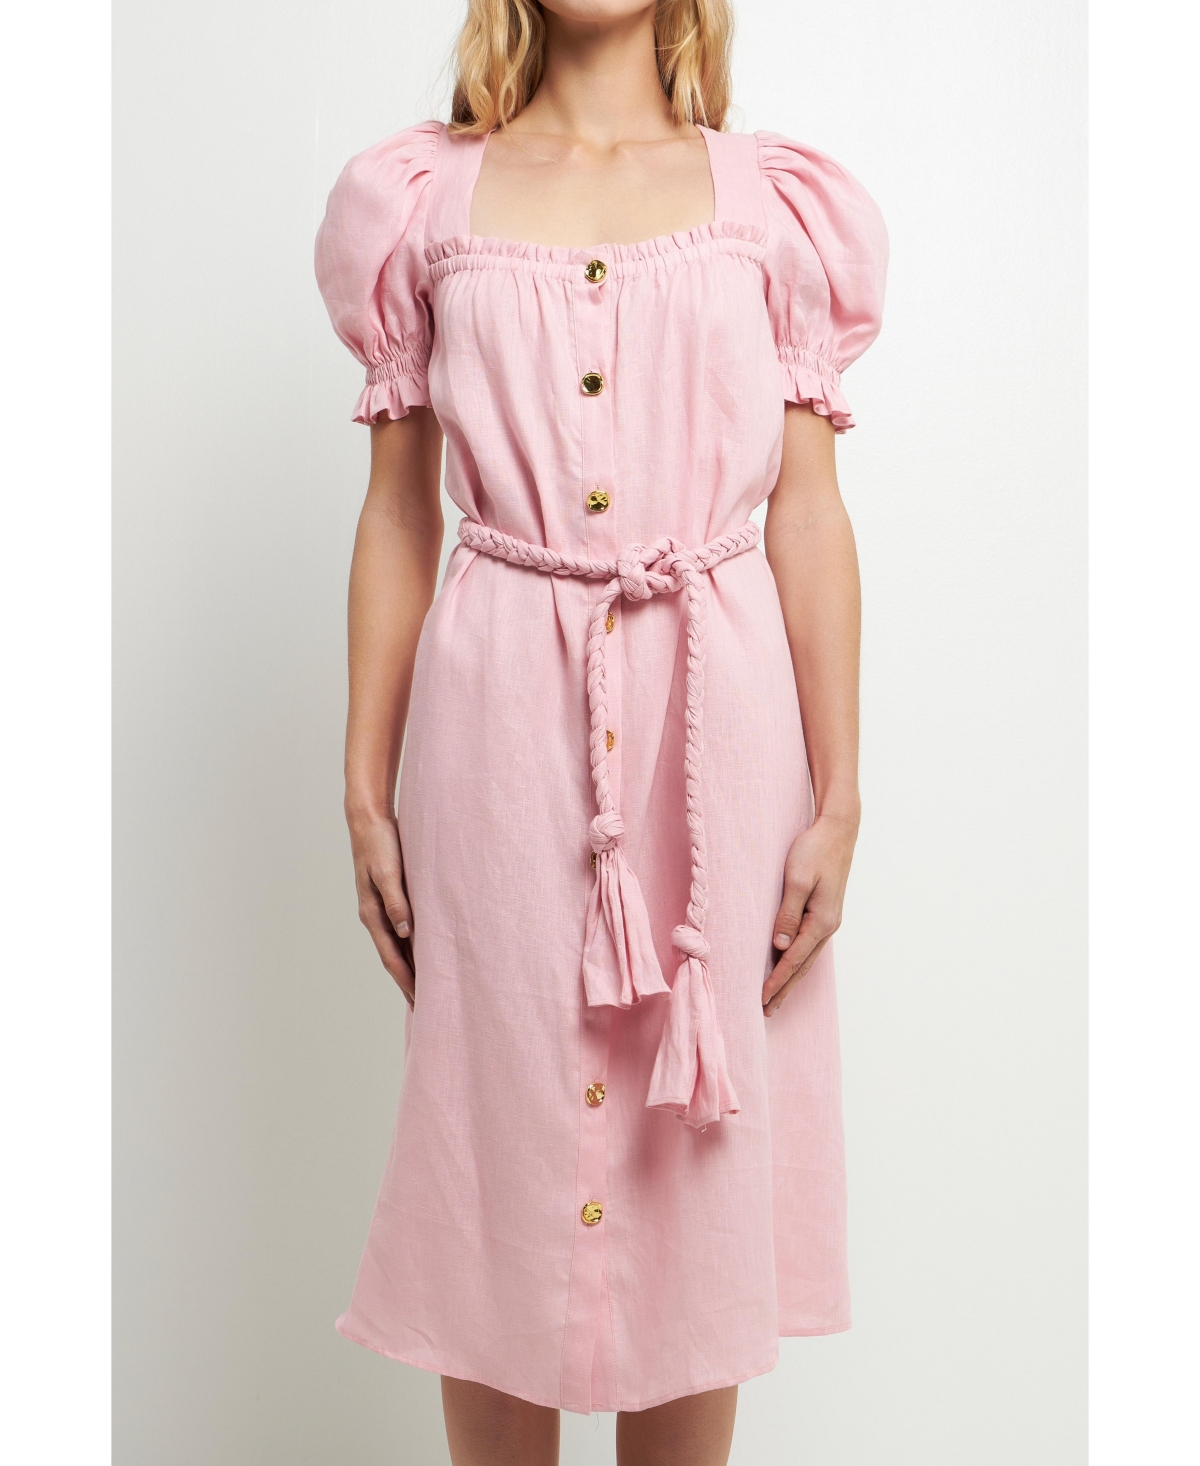 Women's Linen Dress with Tie - Pink